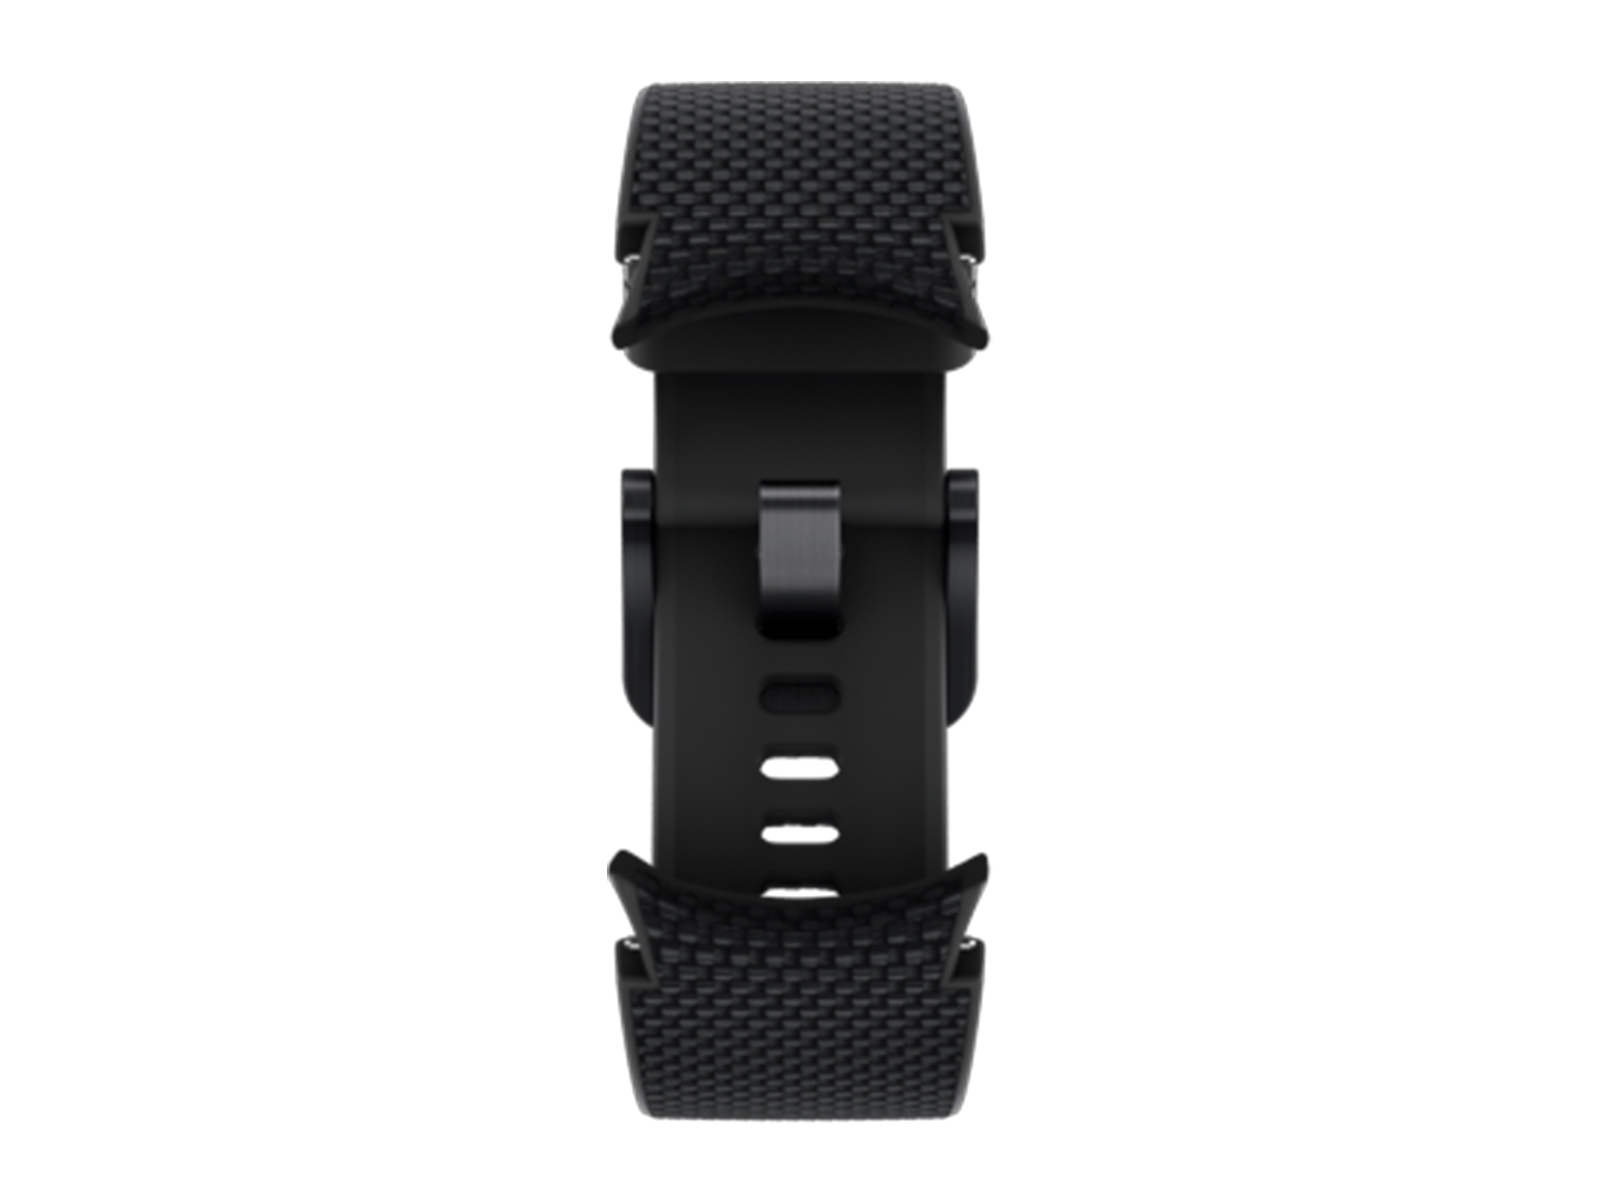 Samsung Galaxy Watch | Cordura Fabric & Silicone Hybrid | Black by Barton Watch Bands 42mm Galaxy Watch / Black PVD